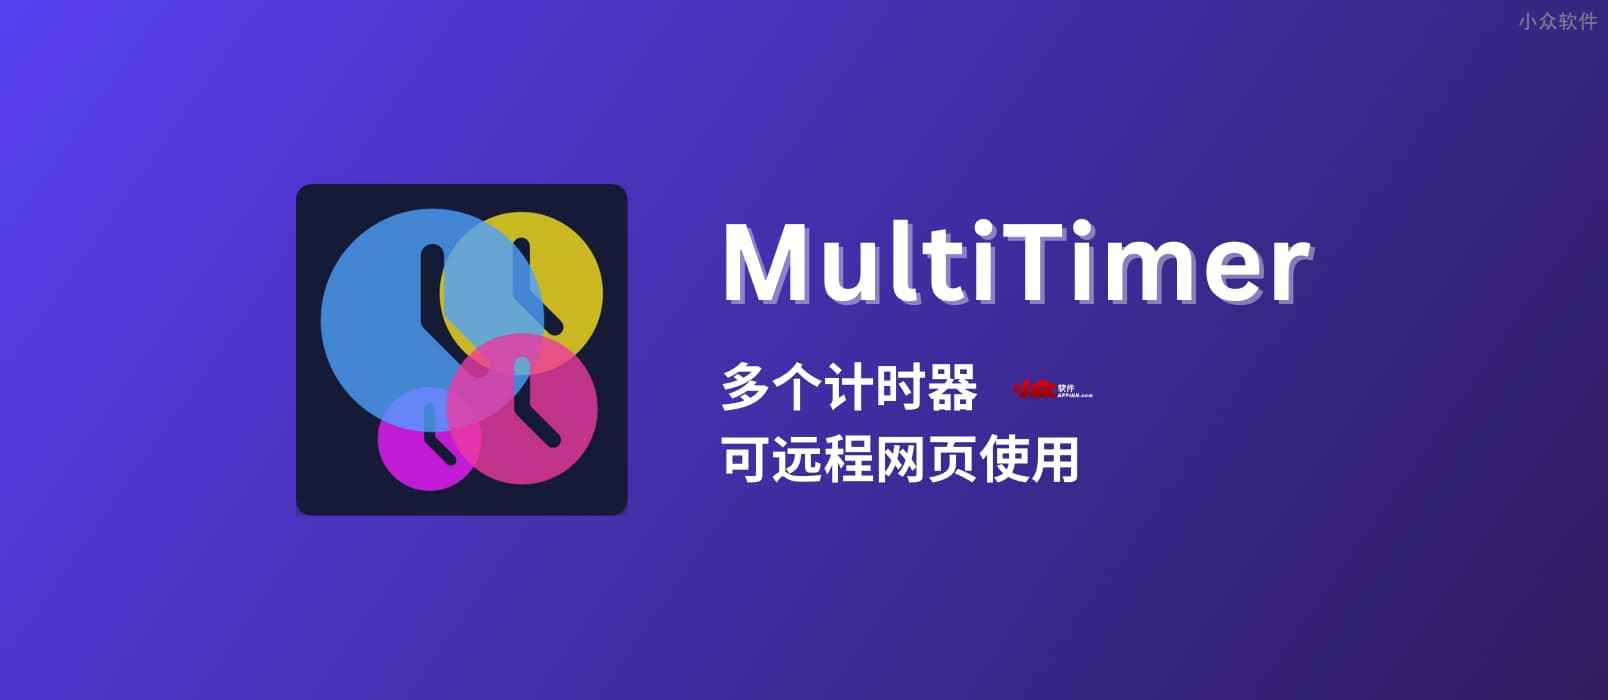 MultiTimer - 同时启动 12+ 个计时器，可远程网页调用